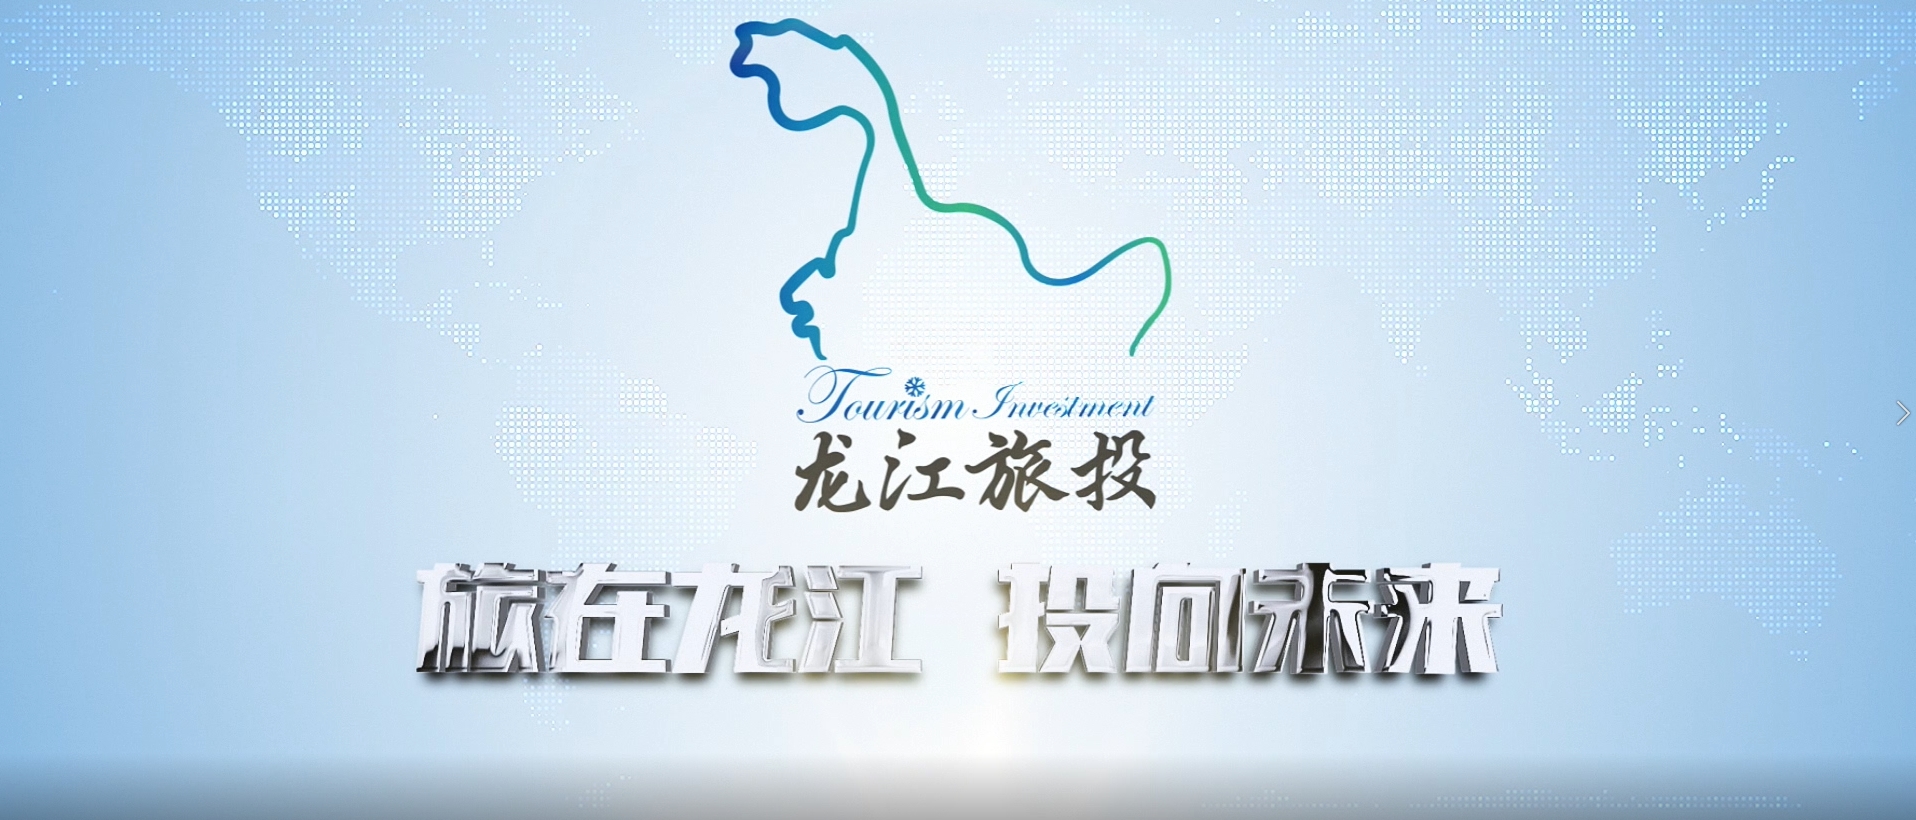 黑龙江省旅游投资集团有限公司宣传片2021